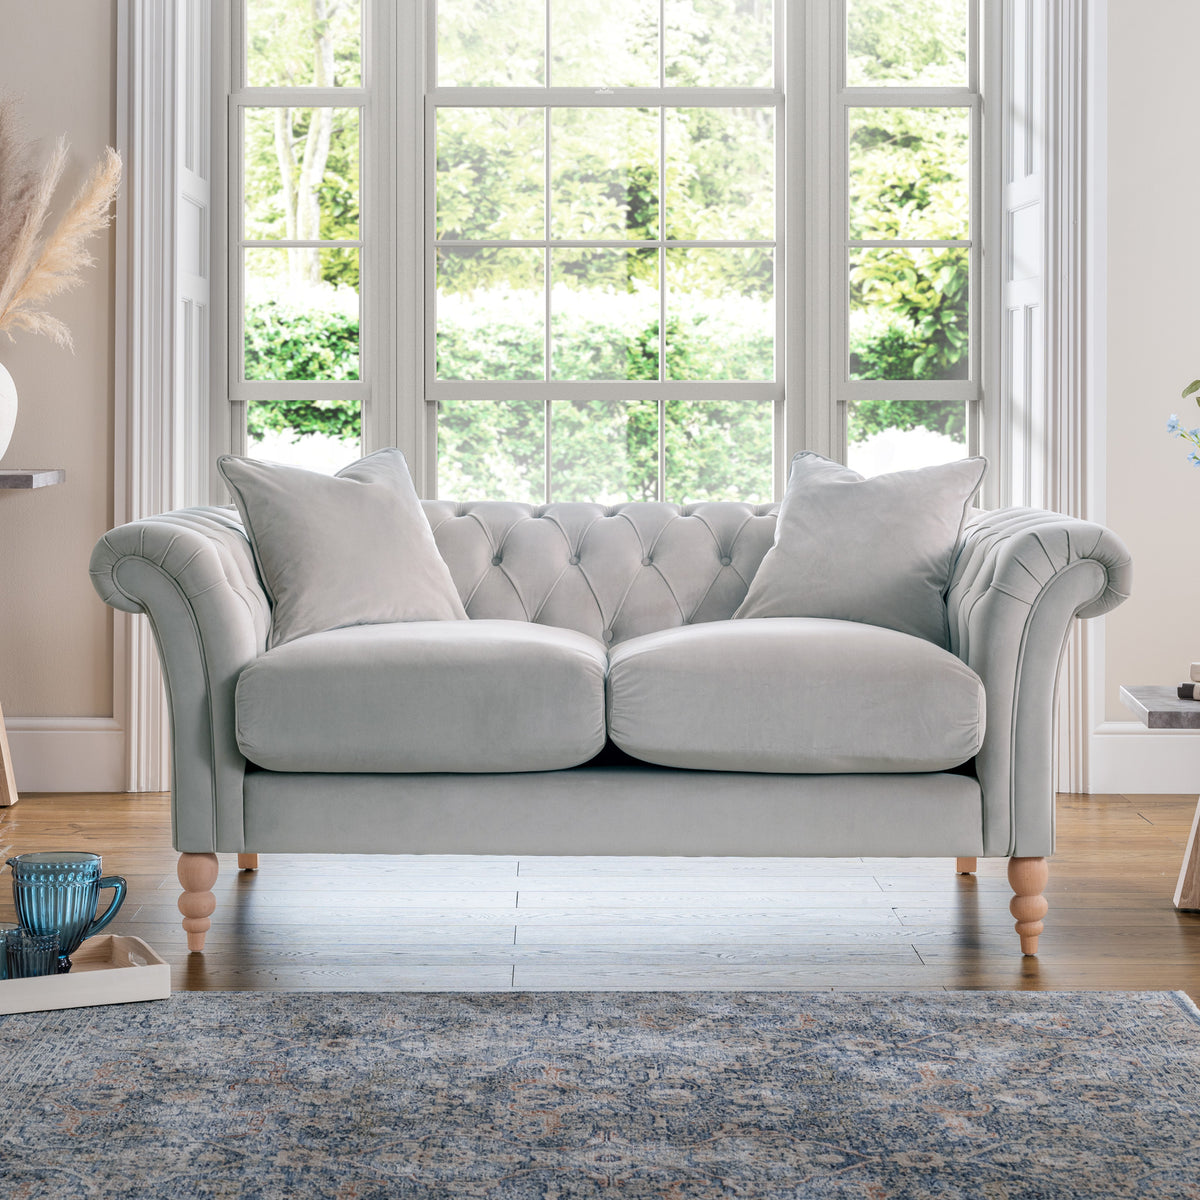 Balmoral Chalk Velvet Chesterfield 2 Seater Couch for living room